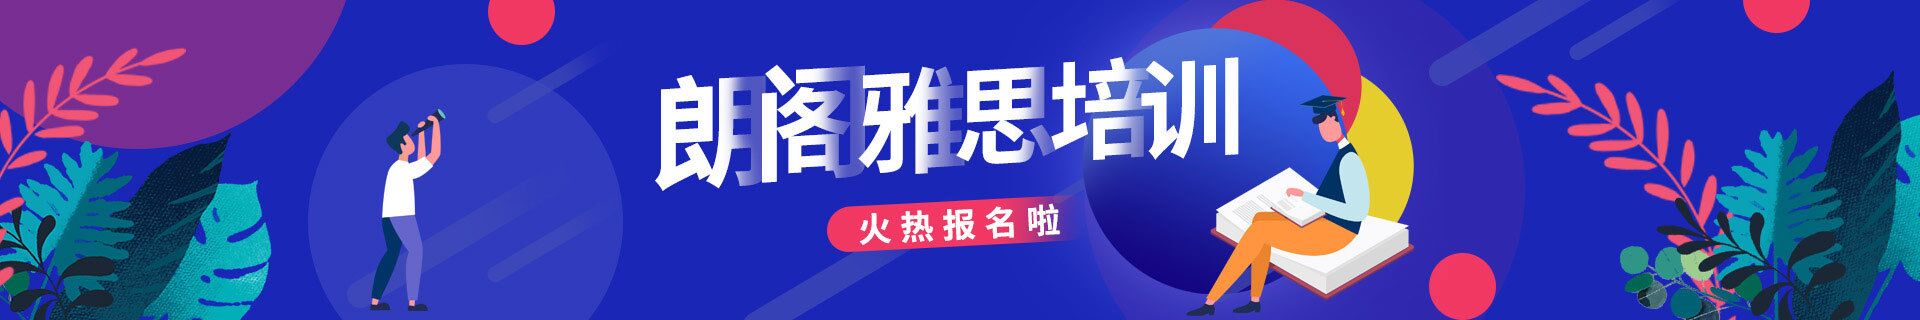 上海浦东新区三立精选教育培训机构